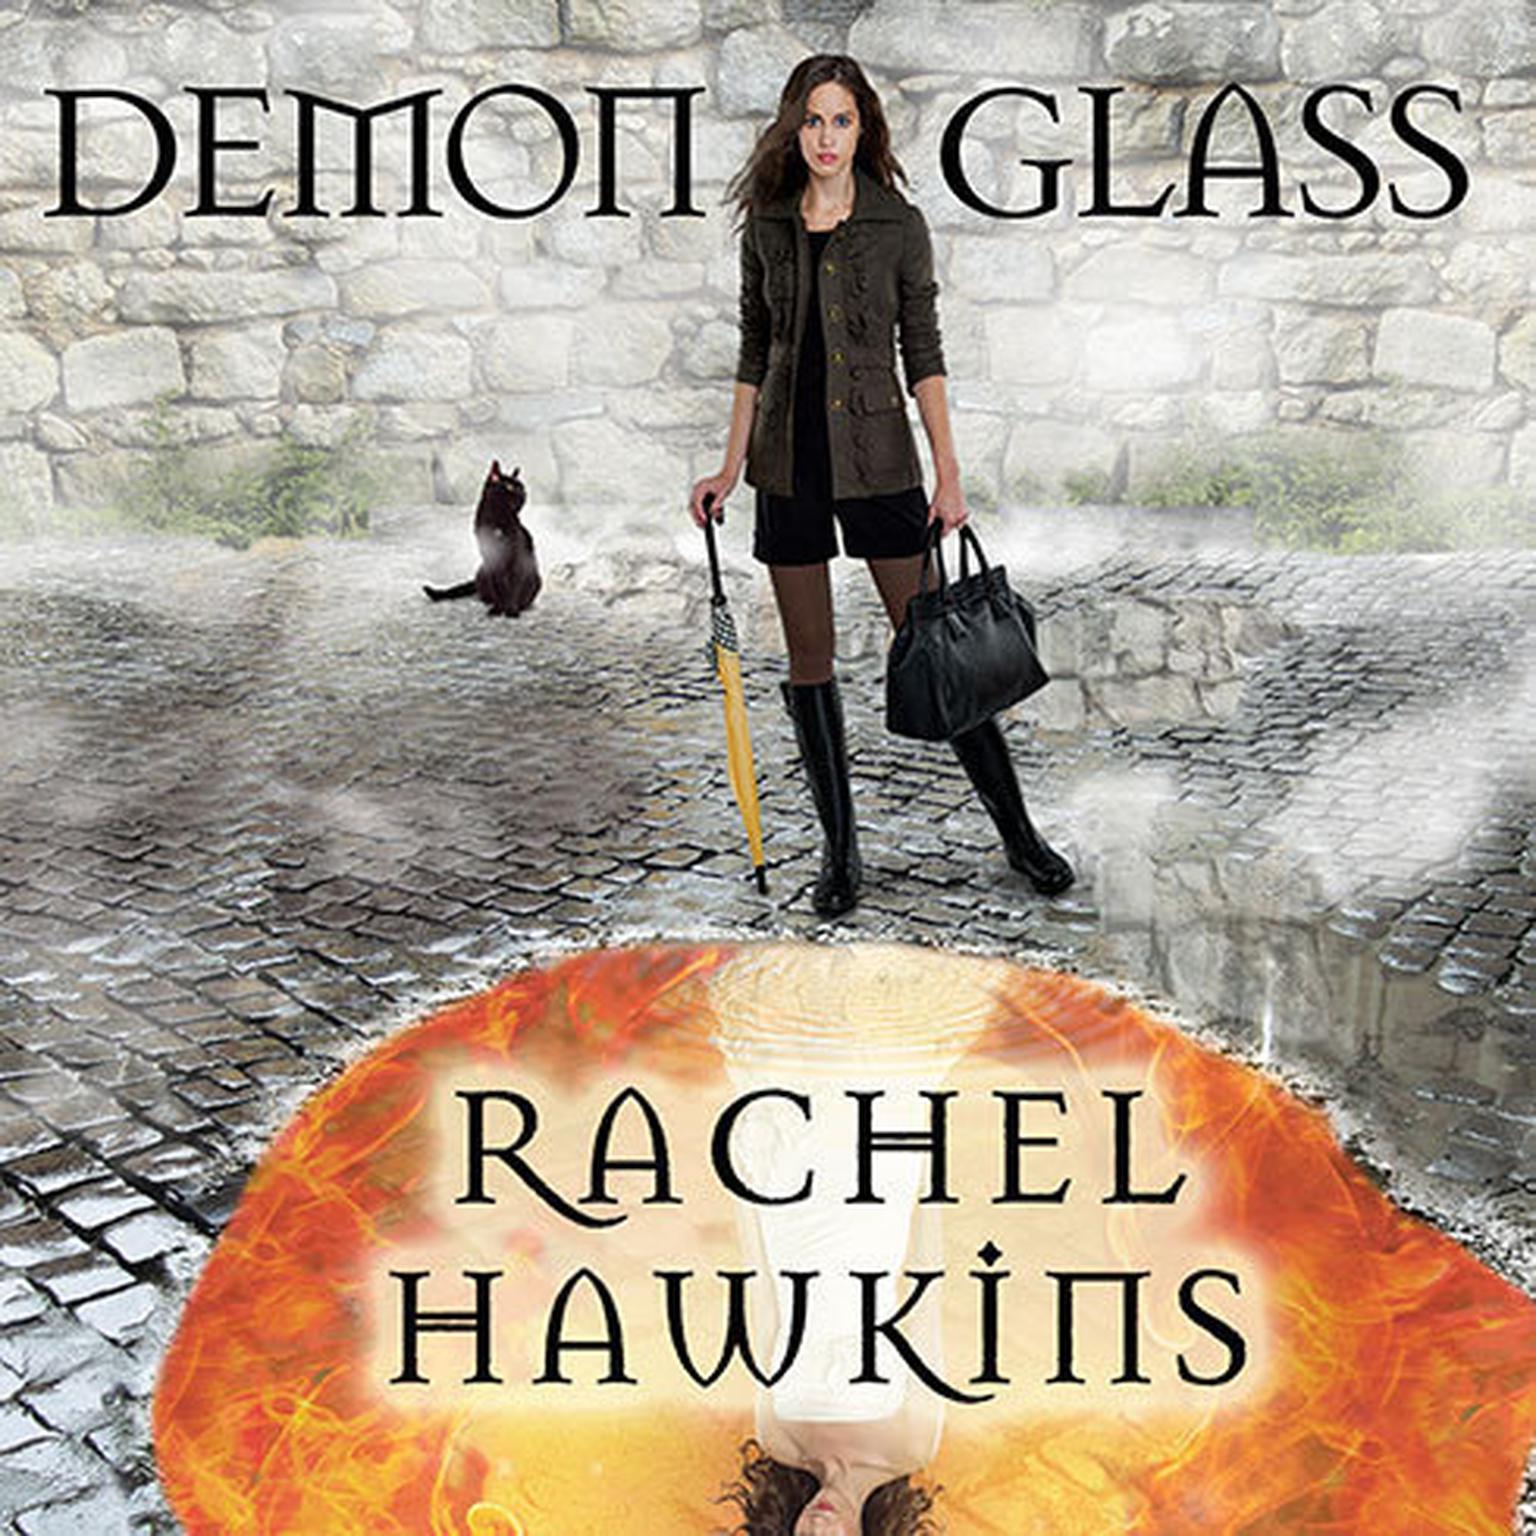 Demonglass Audiobook, by Rachel Hawkins